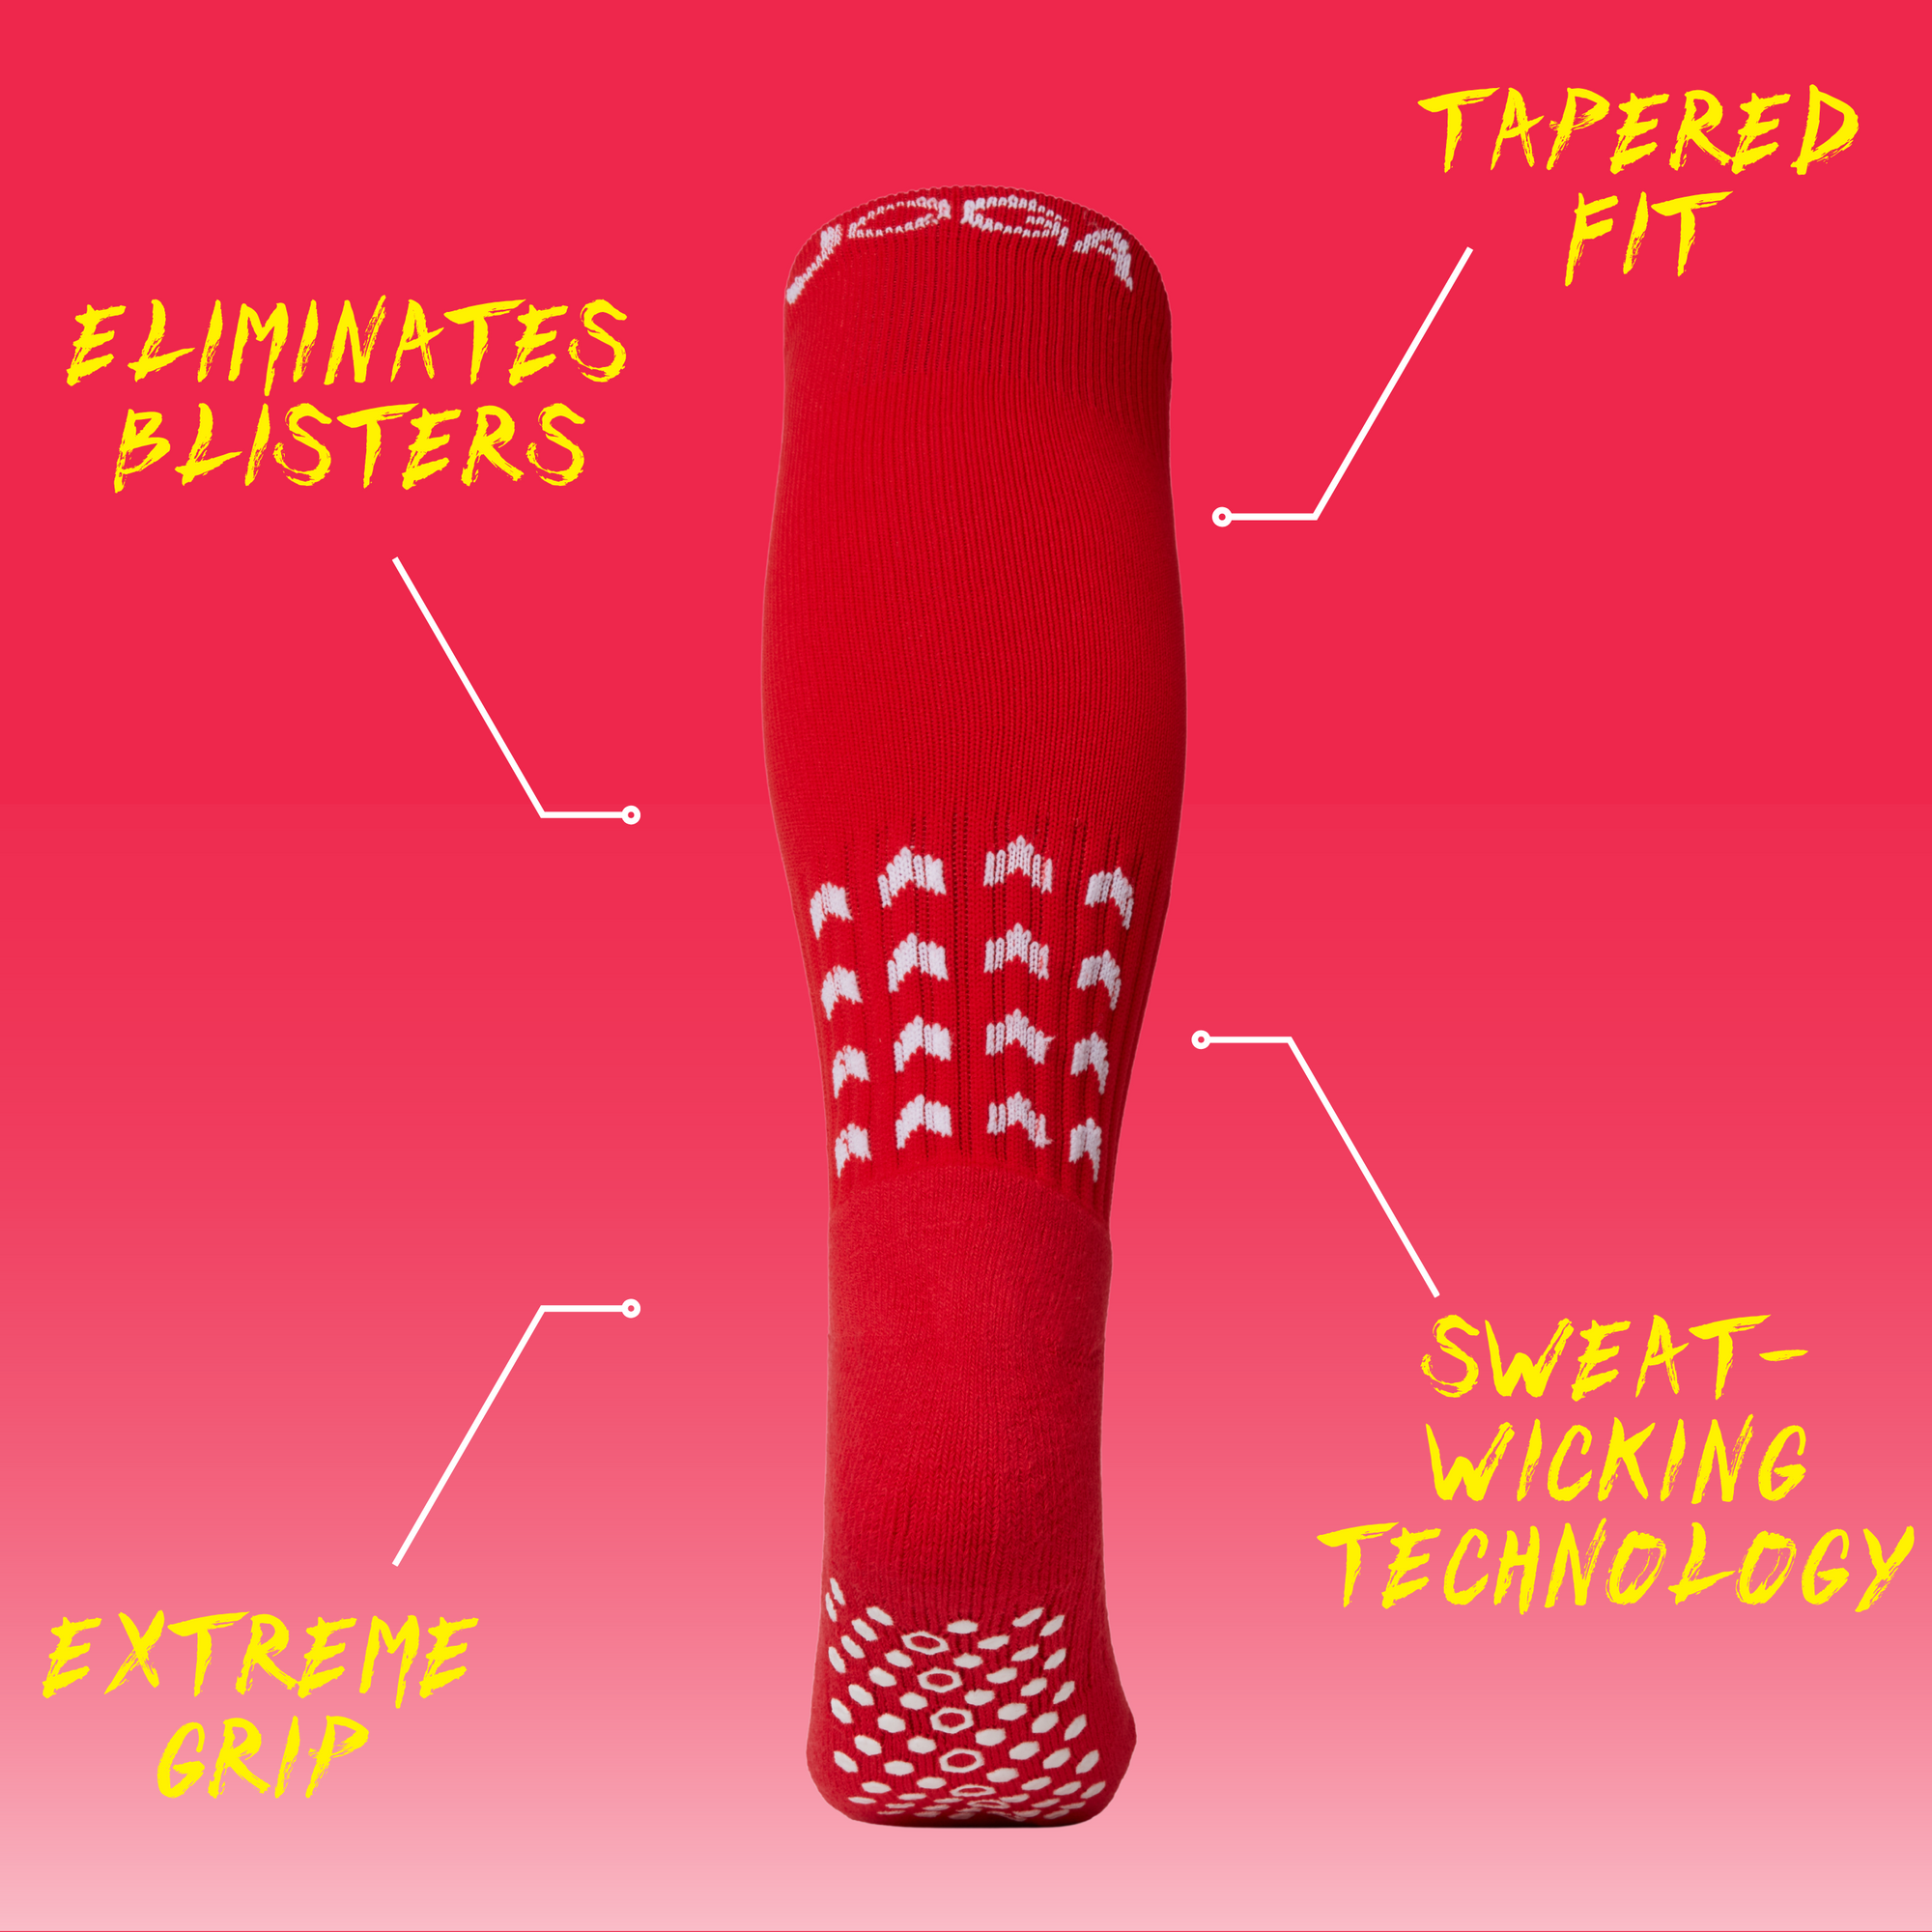 JOGA Starz Full-Length Grip Socks - Red